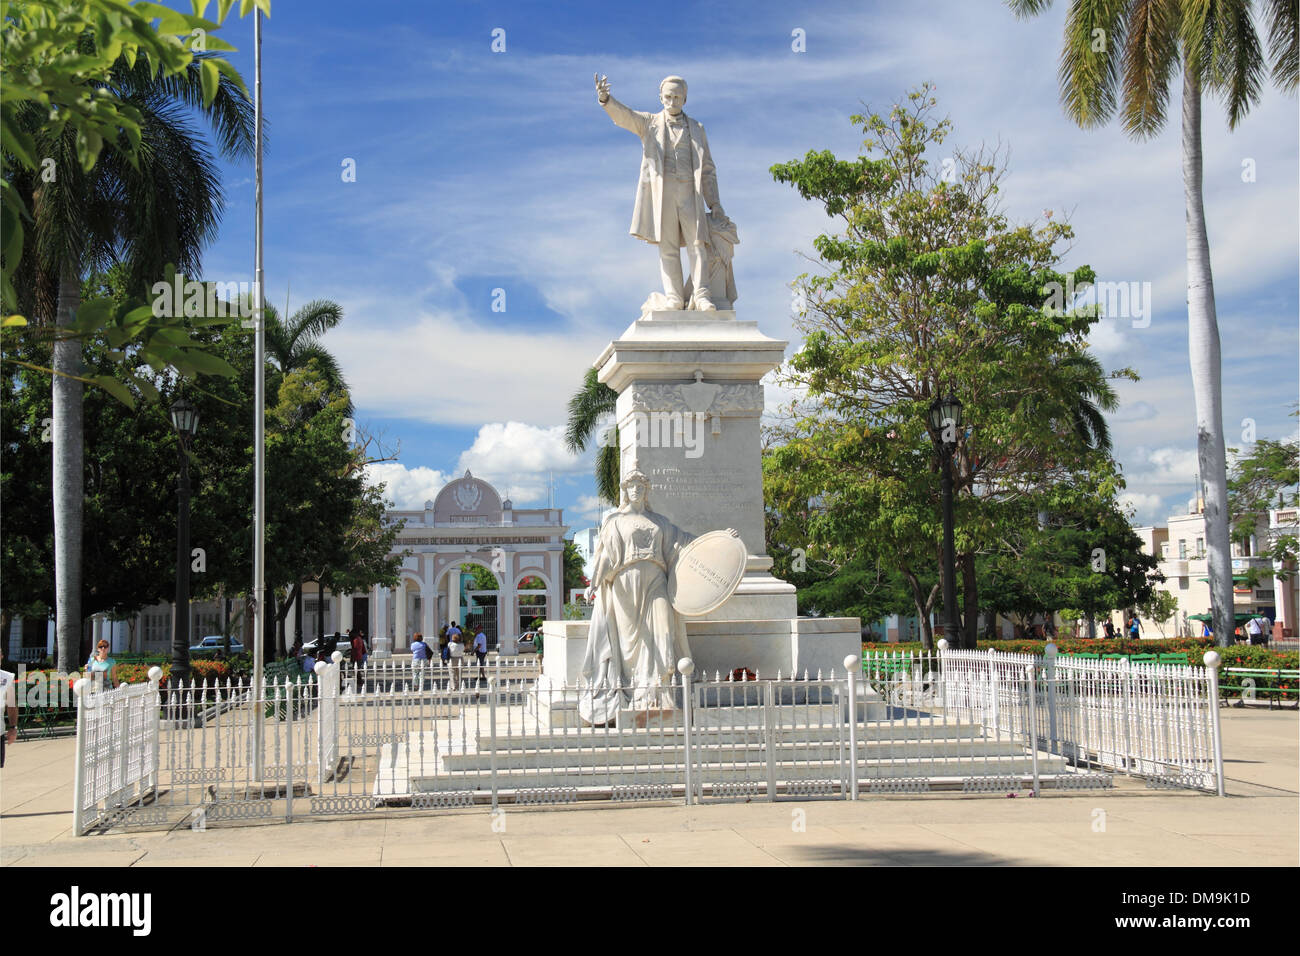 Memorial José Martí et Arco de Triunfo, Parque José Martí, province de Cienfuegos, Cuba, mer des Caraïbes, l'Amérique centrale Banque D'Images